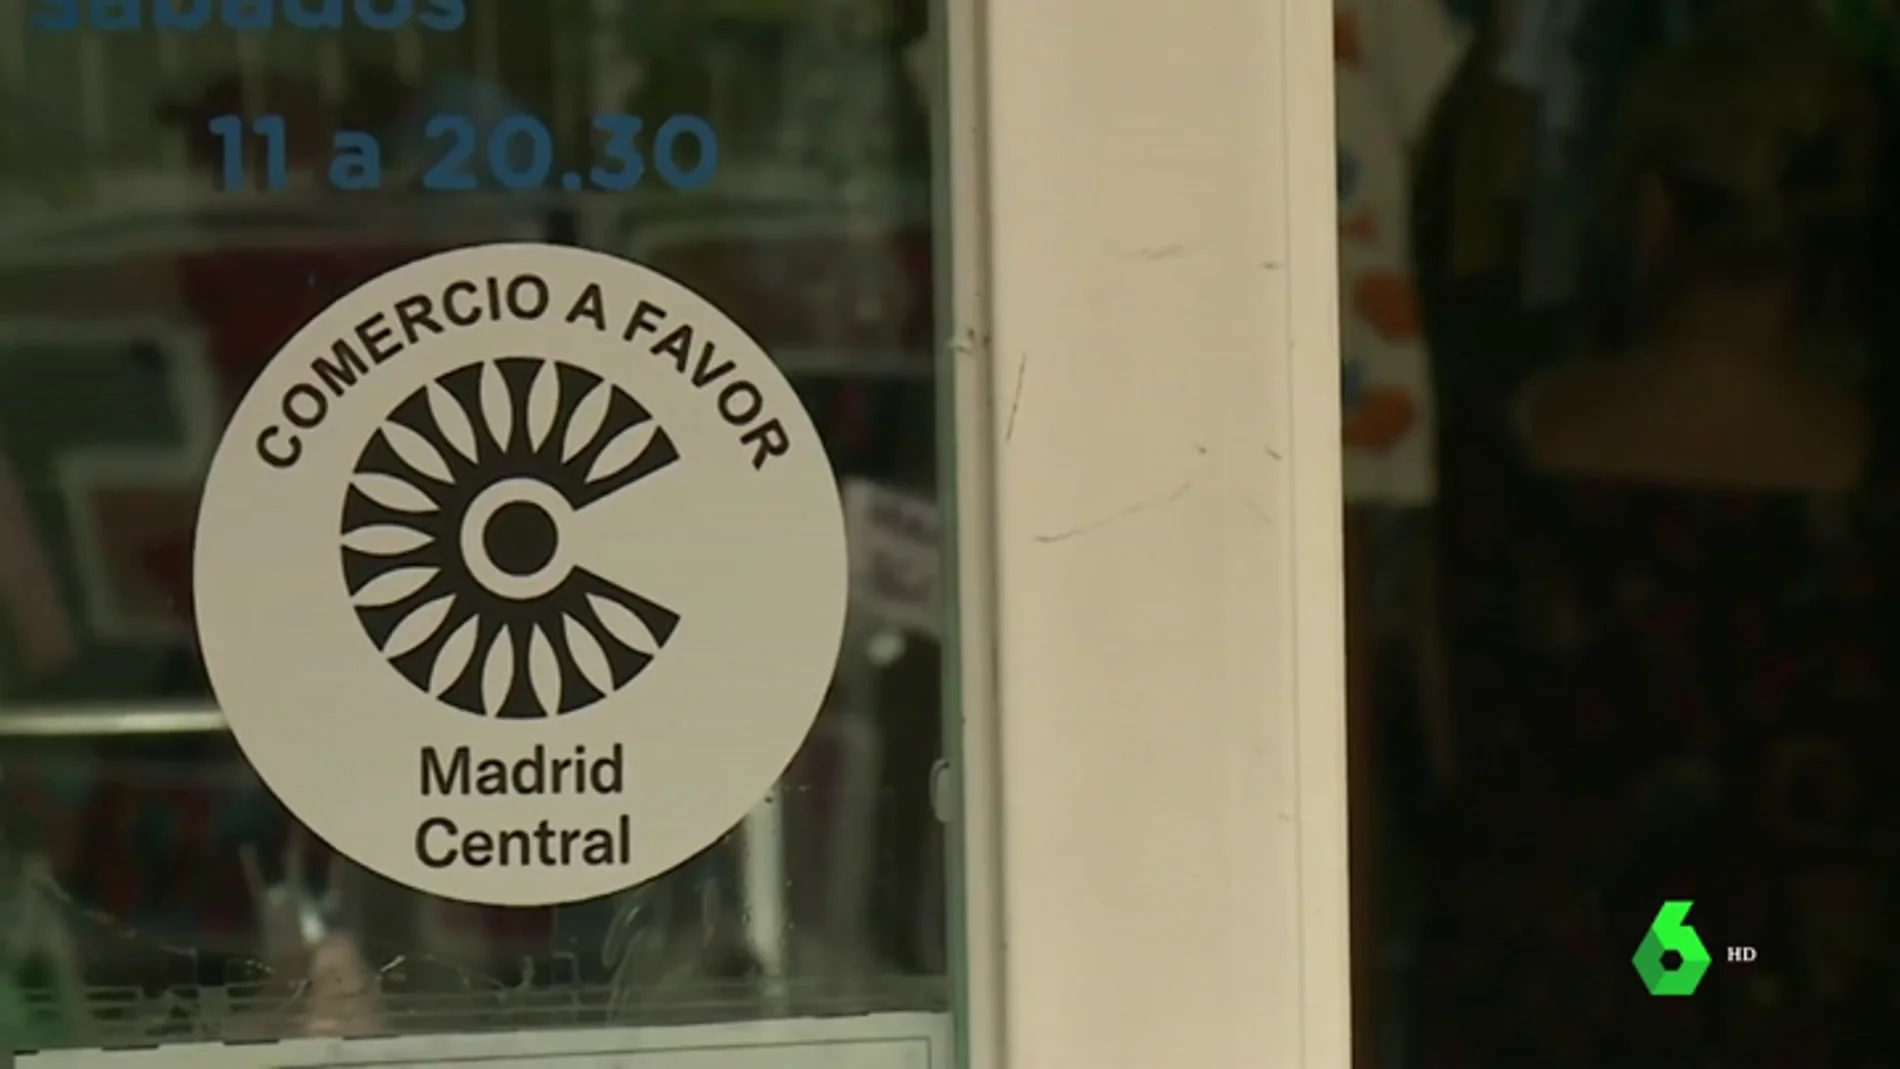 Los comerciantes se suman al apoyo a Madrid Central: "Lo que nos interesa es que haya gente en la calle"